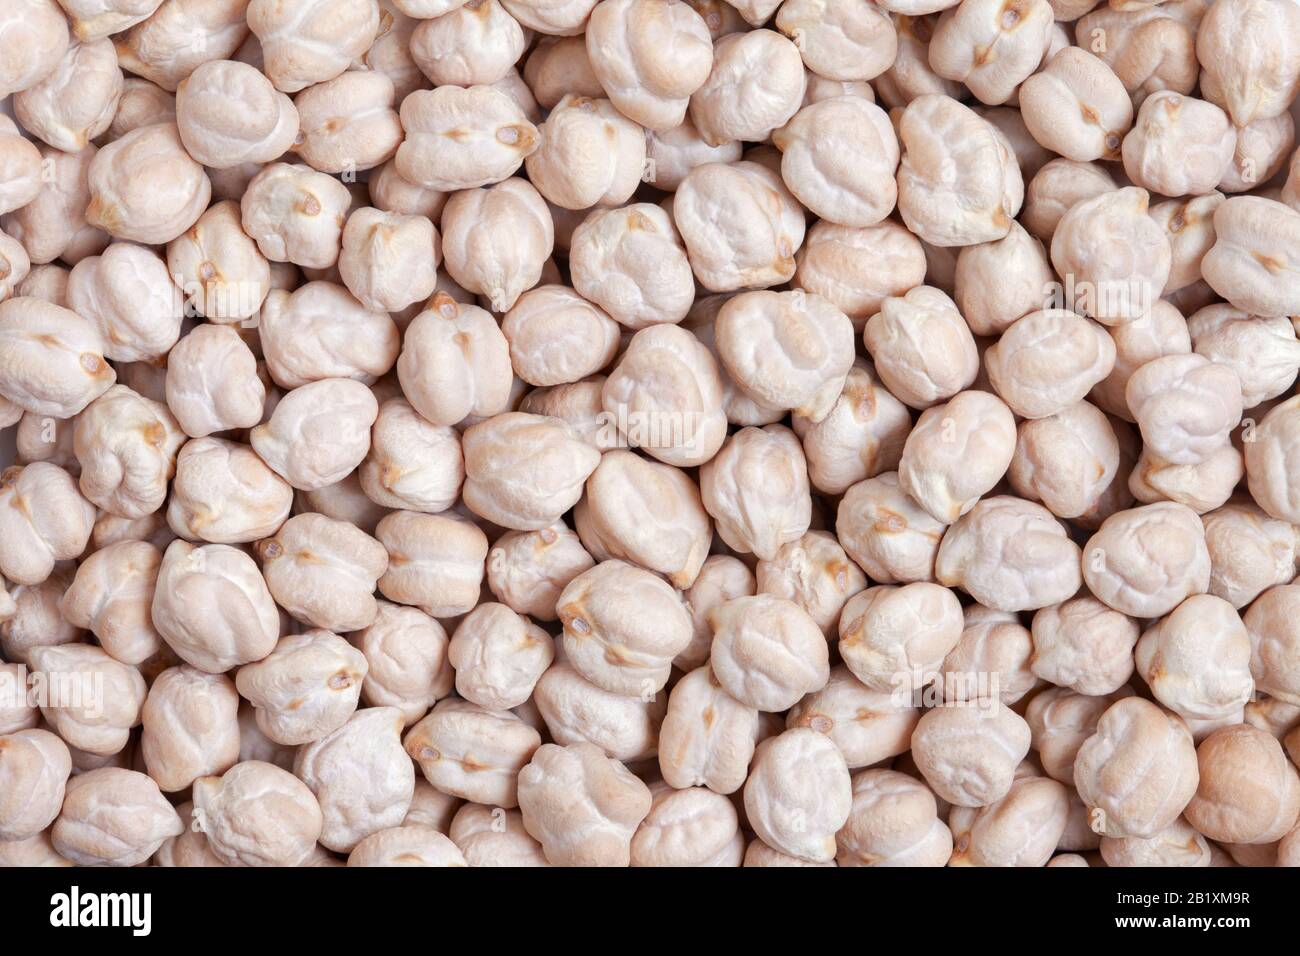 Hintergrund der Kichererbsentextur. Auch Garbanzo Bean oder Ceci Bean genannt. Aus dem Nahen Osten stammend, mildes und süßes Aroma mit gutem Protein und Eisen Stockfoto